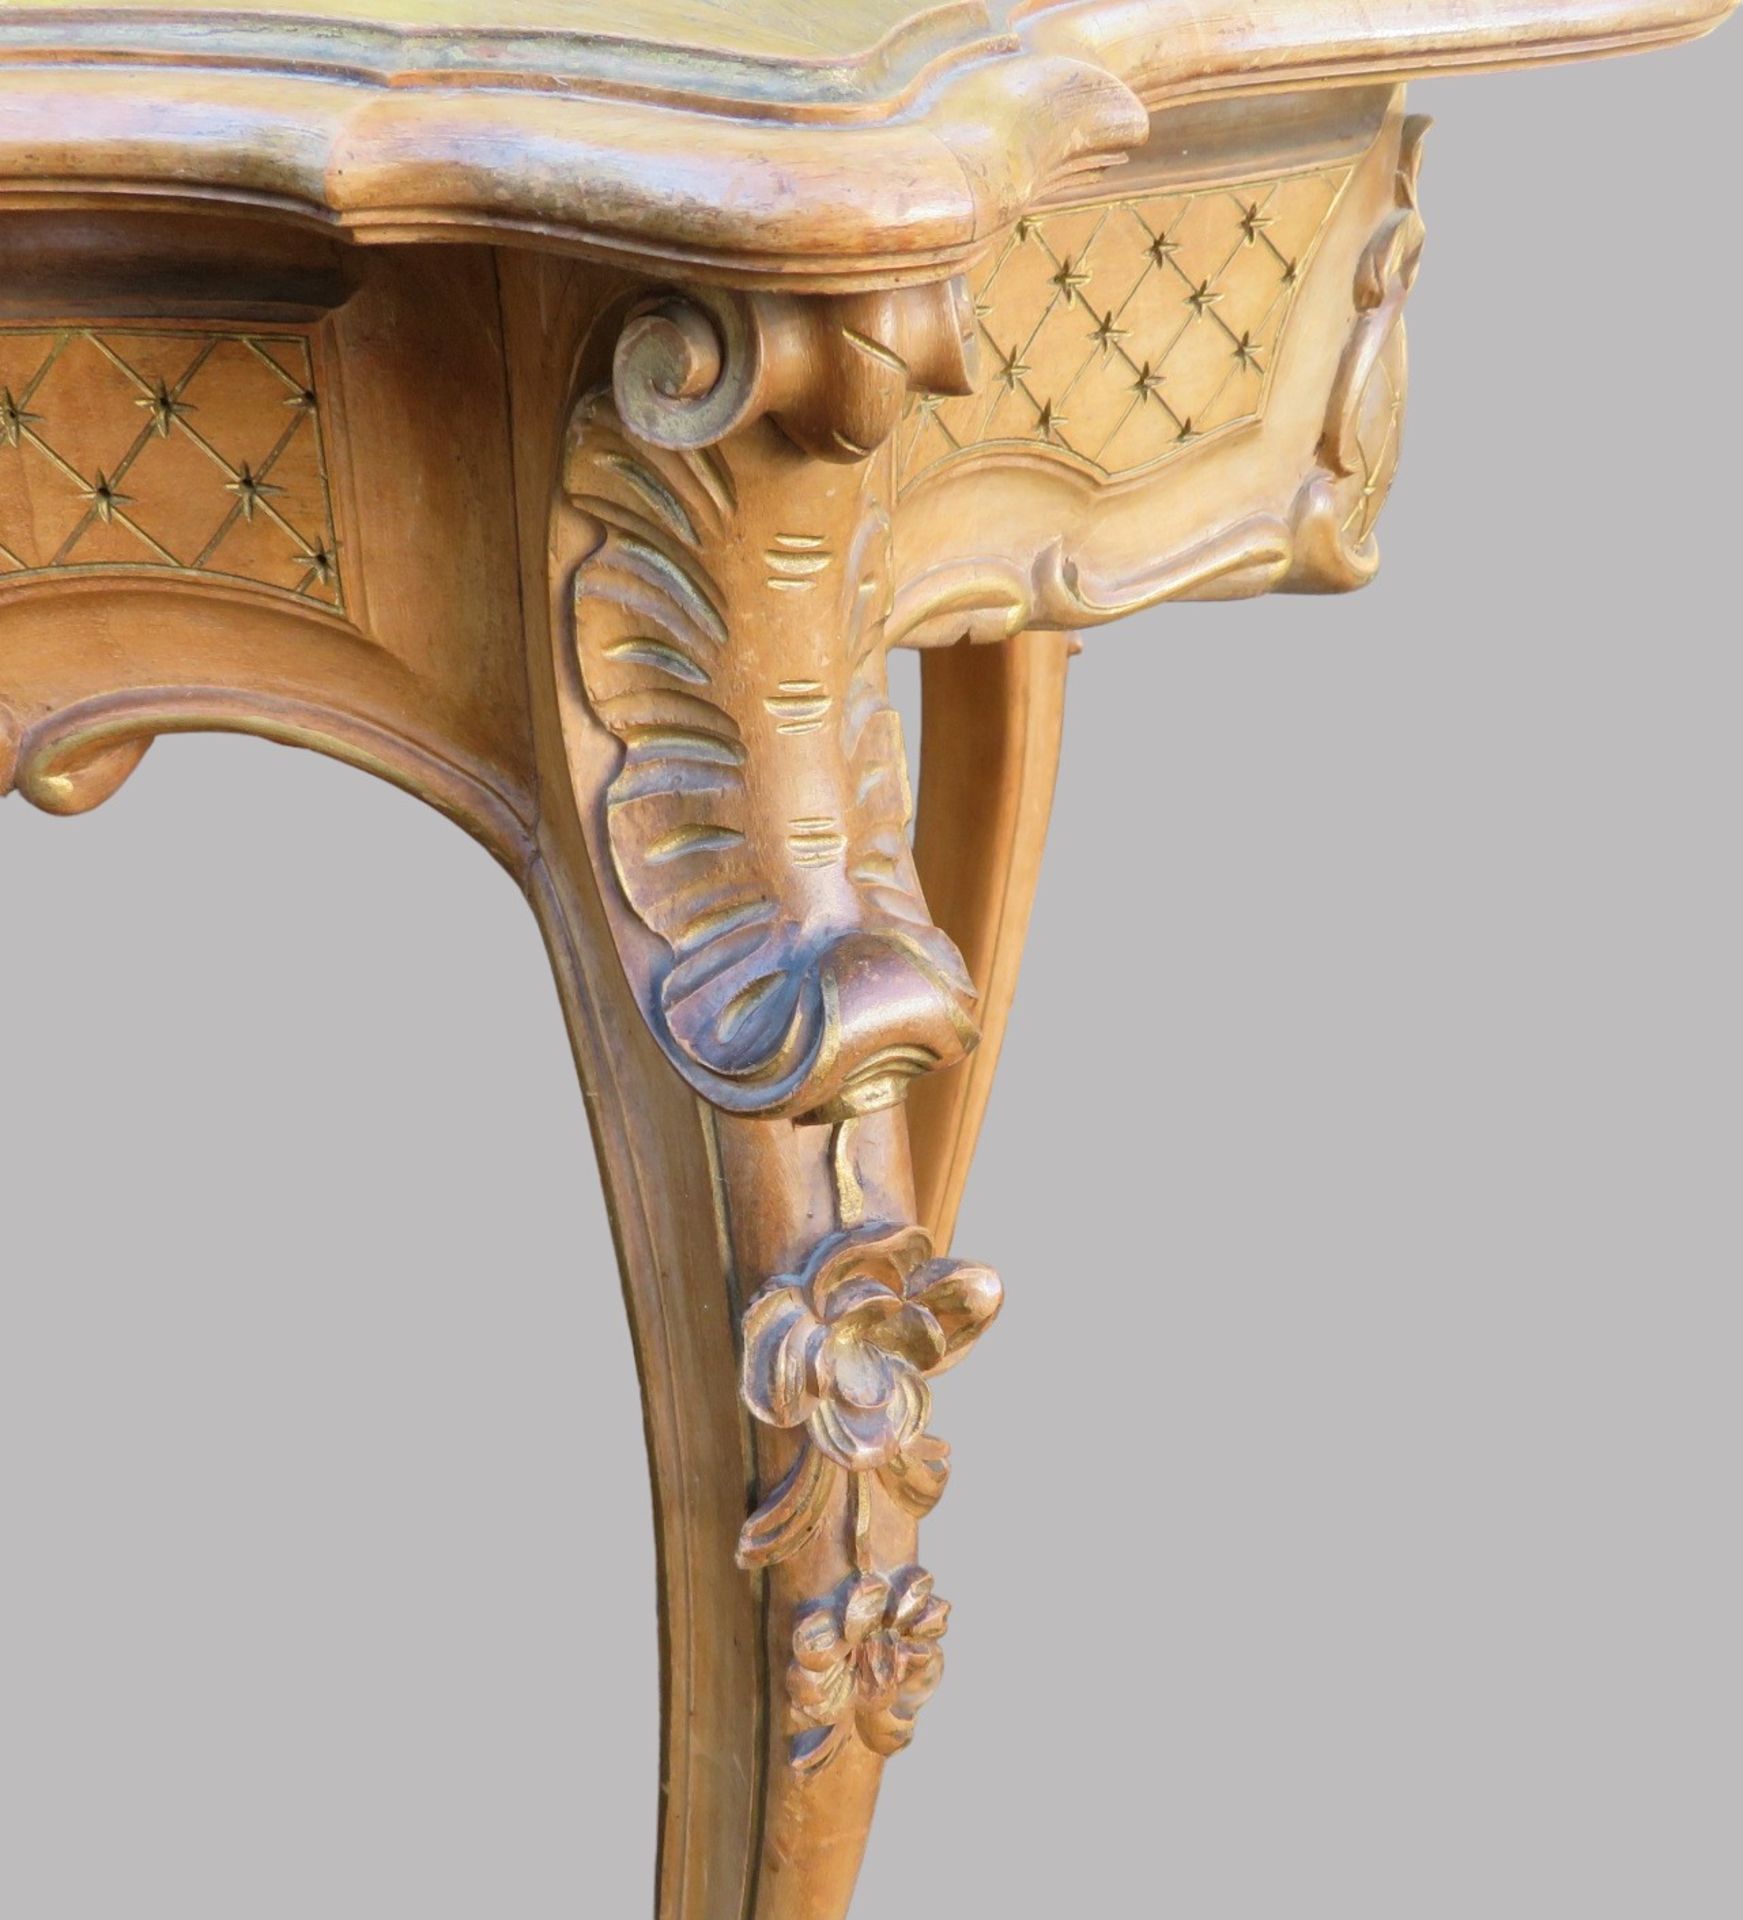 Tisch, Rokokostil, 19. Jahrhundert, Nussbaum beschnitzt, rest.bed., 74 x 90 x 54 cm. - Bild 3 aus 3